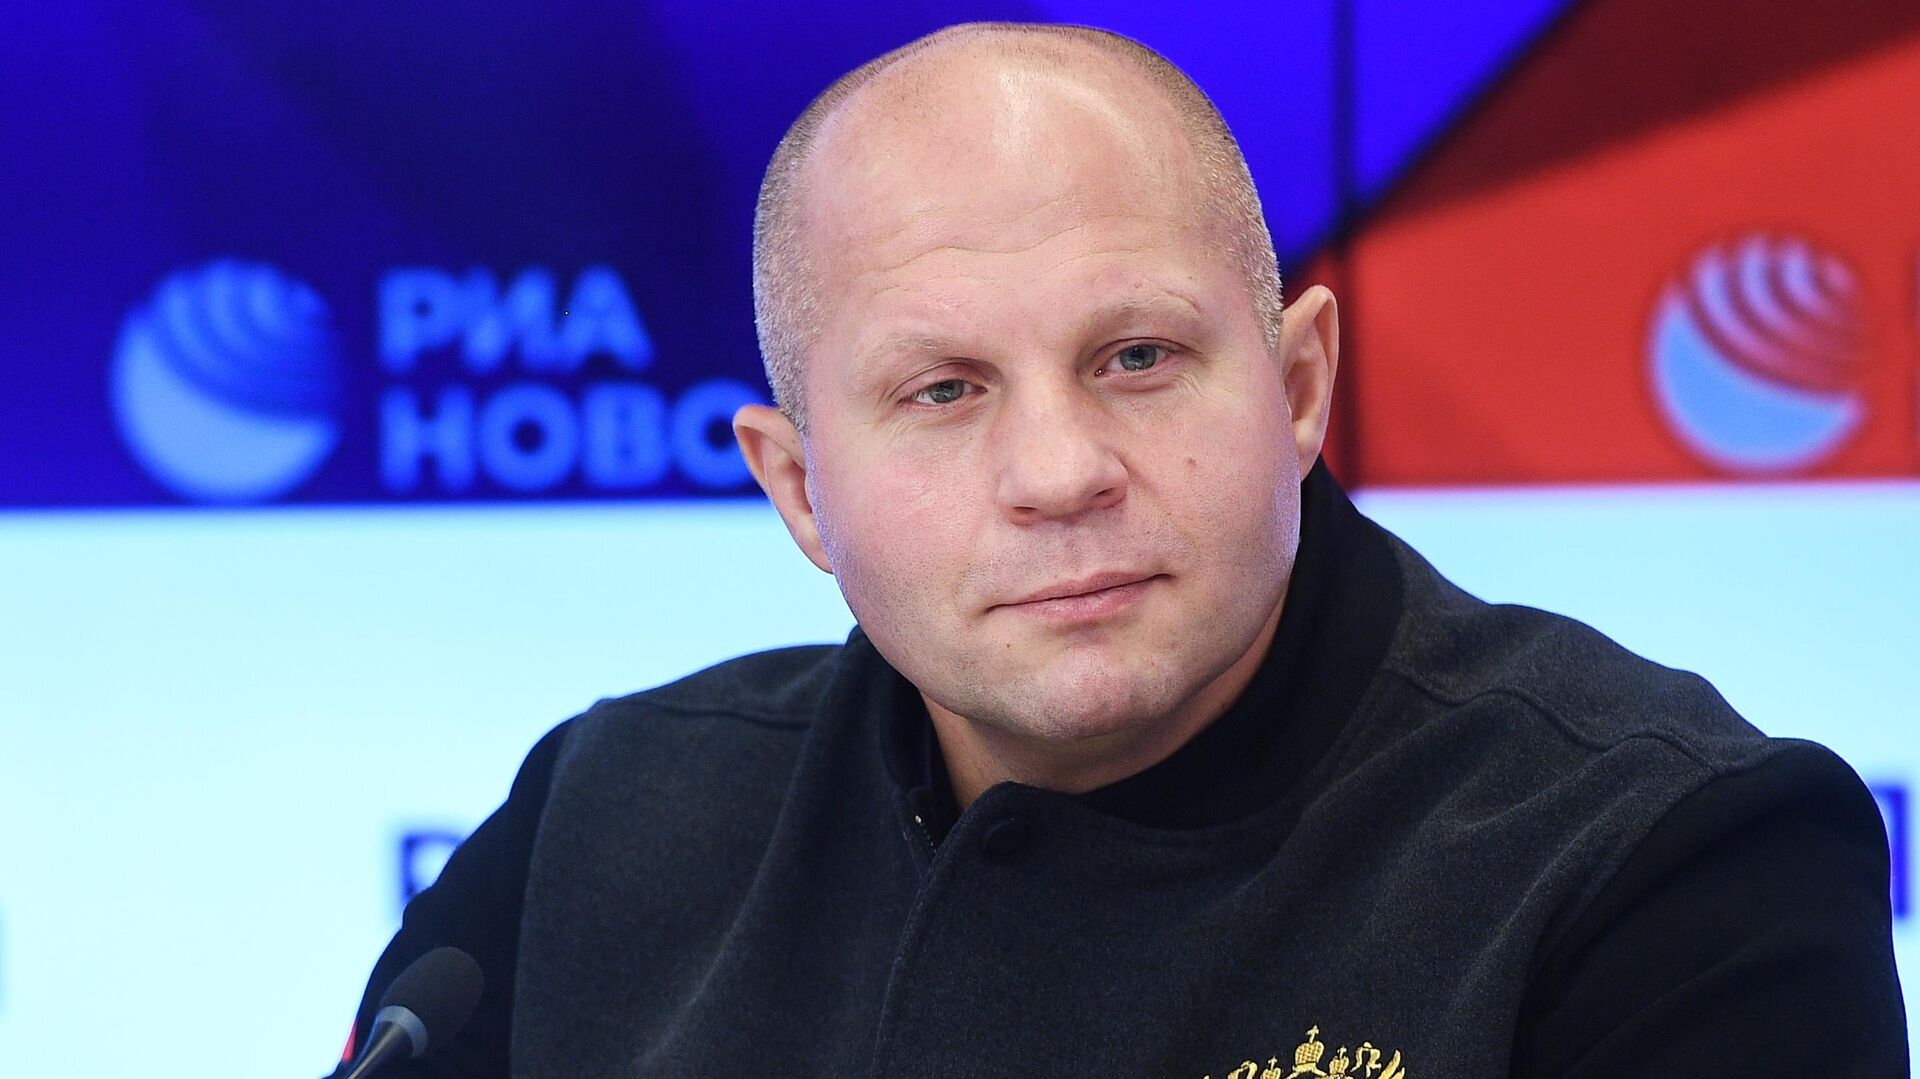 Гаджиев: если Федор за конструктив, то его отношение к поп-MMA не повлияет на работу с промоушенами